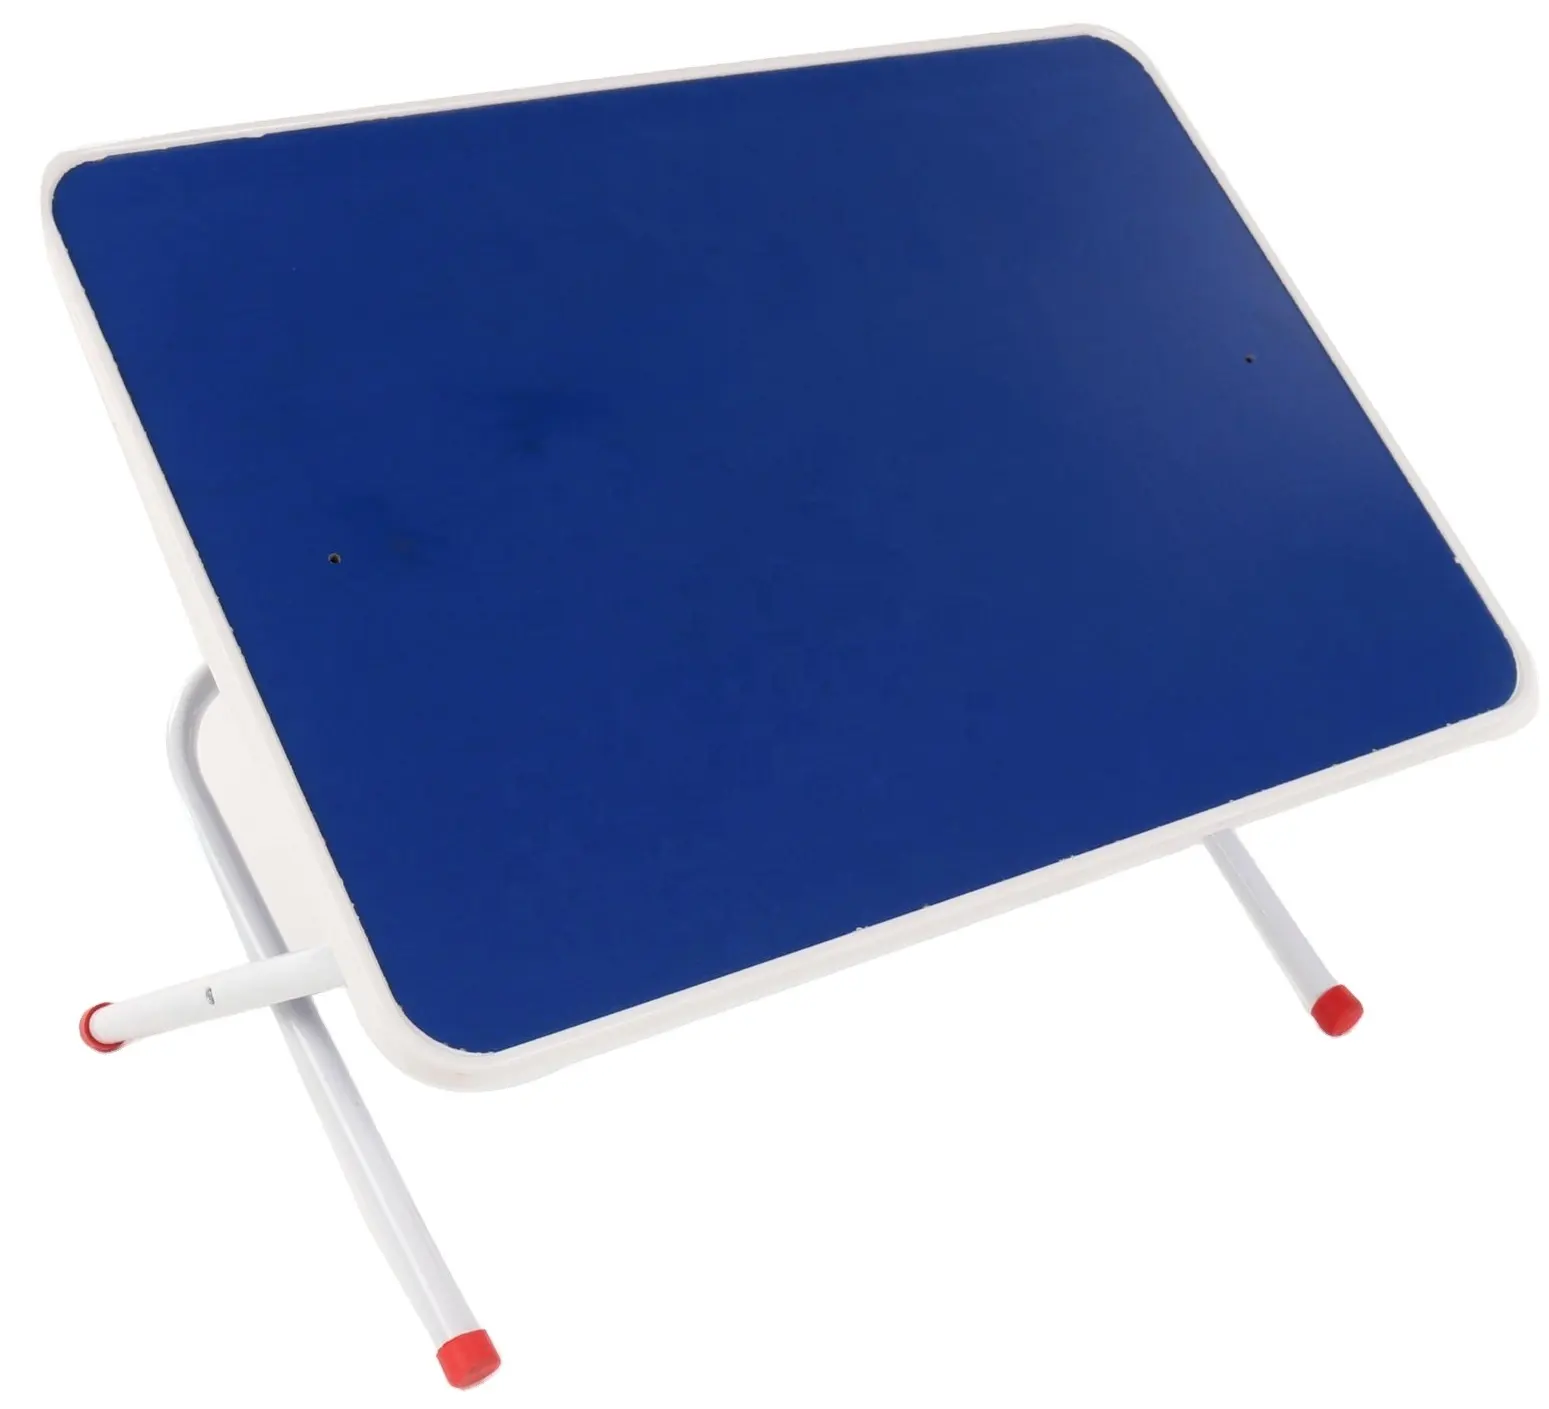 Nuovo arrivo bordo sagomato in plastica tavolo regolabile dal Design italiano con lavagna per scrivere e strofinare scrivania rossa salvaspazio pieghevole